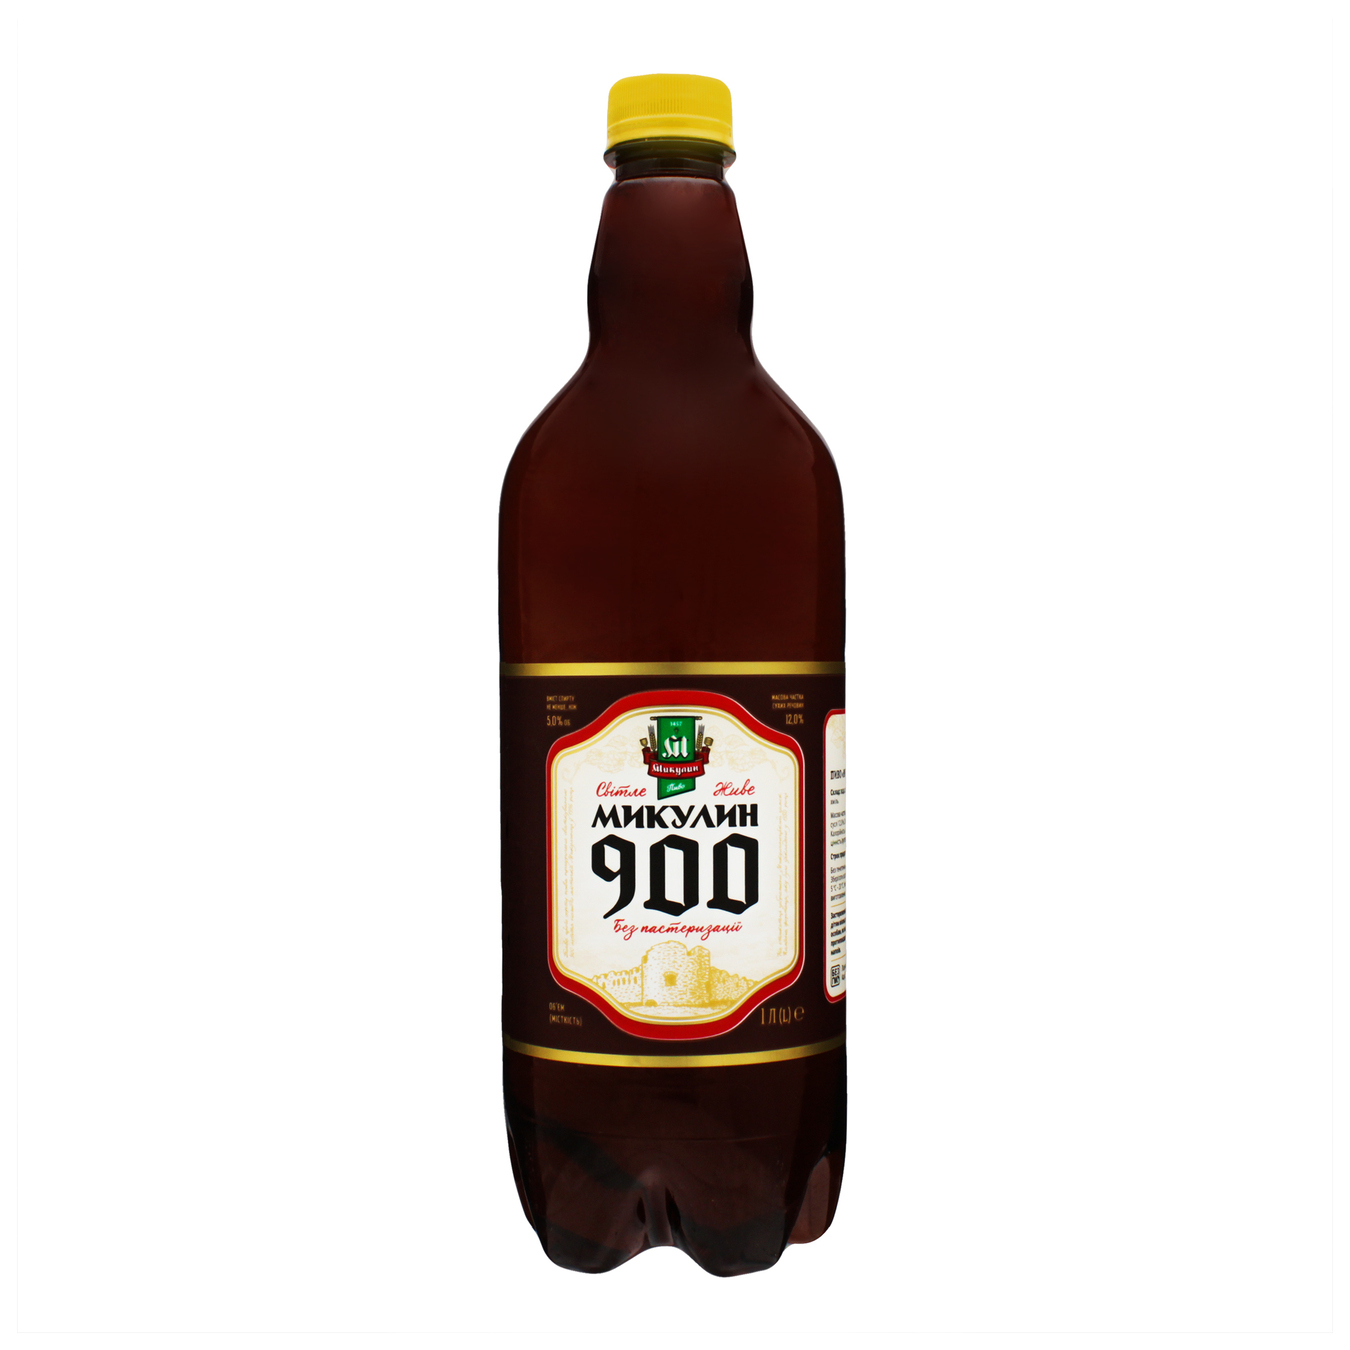 Пиво Микулинецкое Микулин 900 светлое 5% 1л